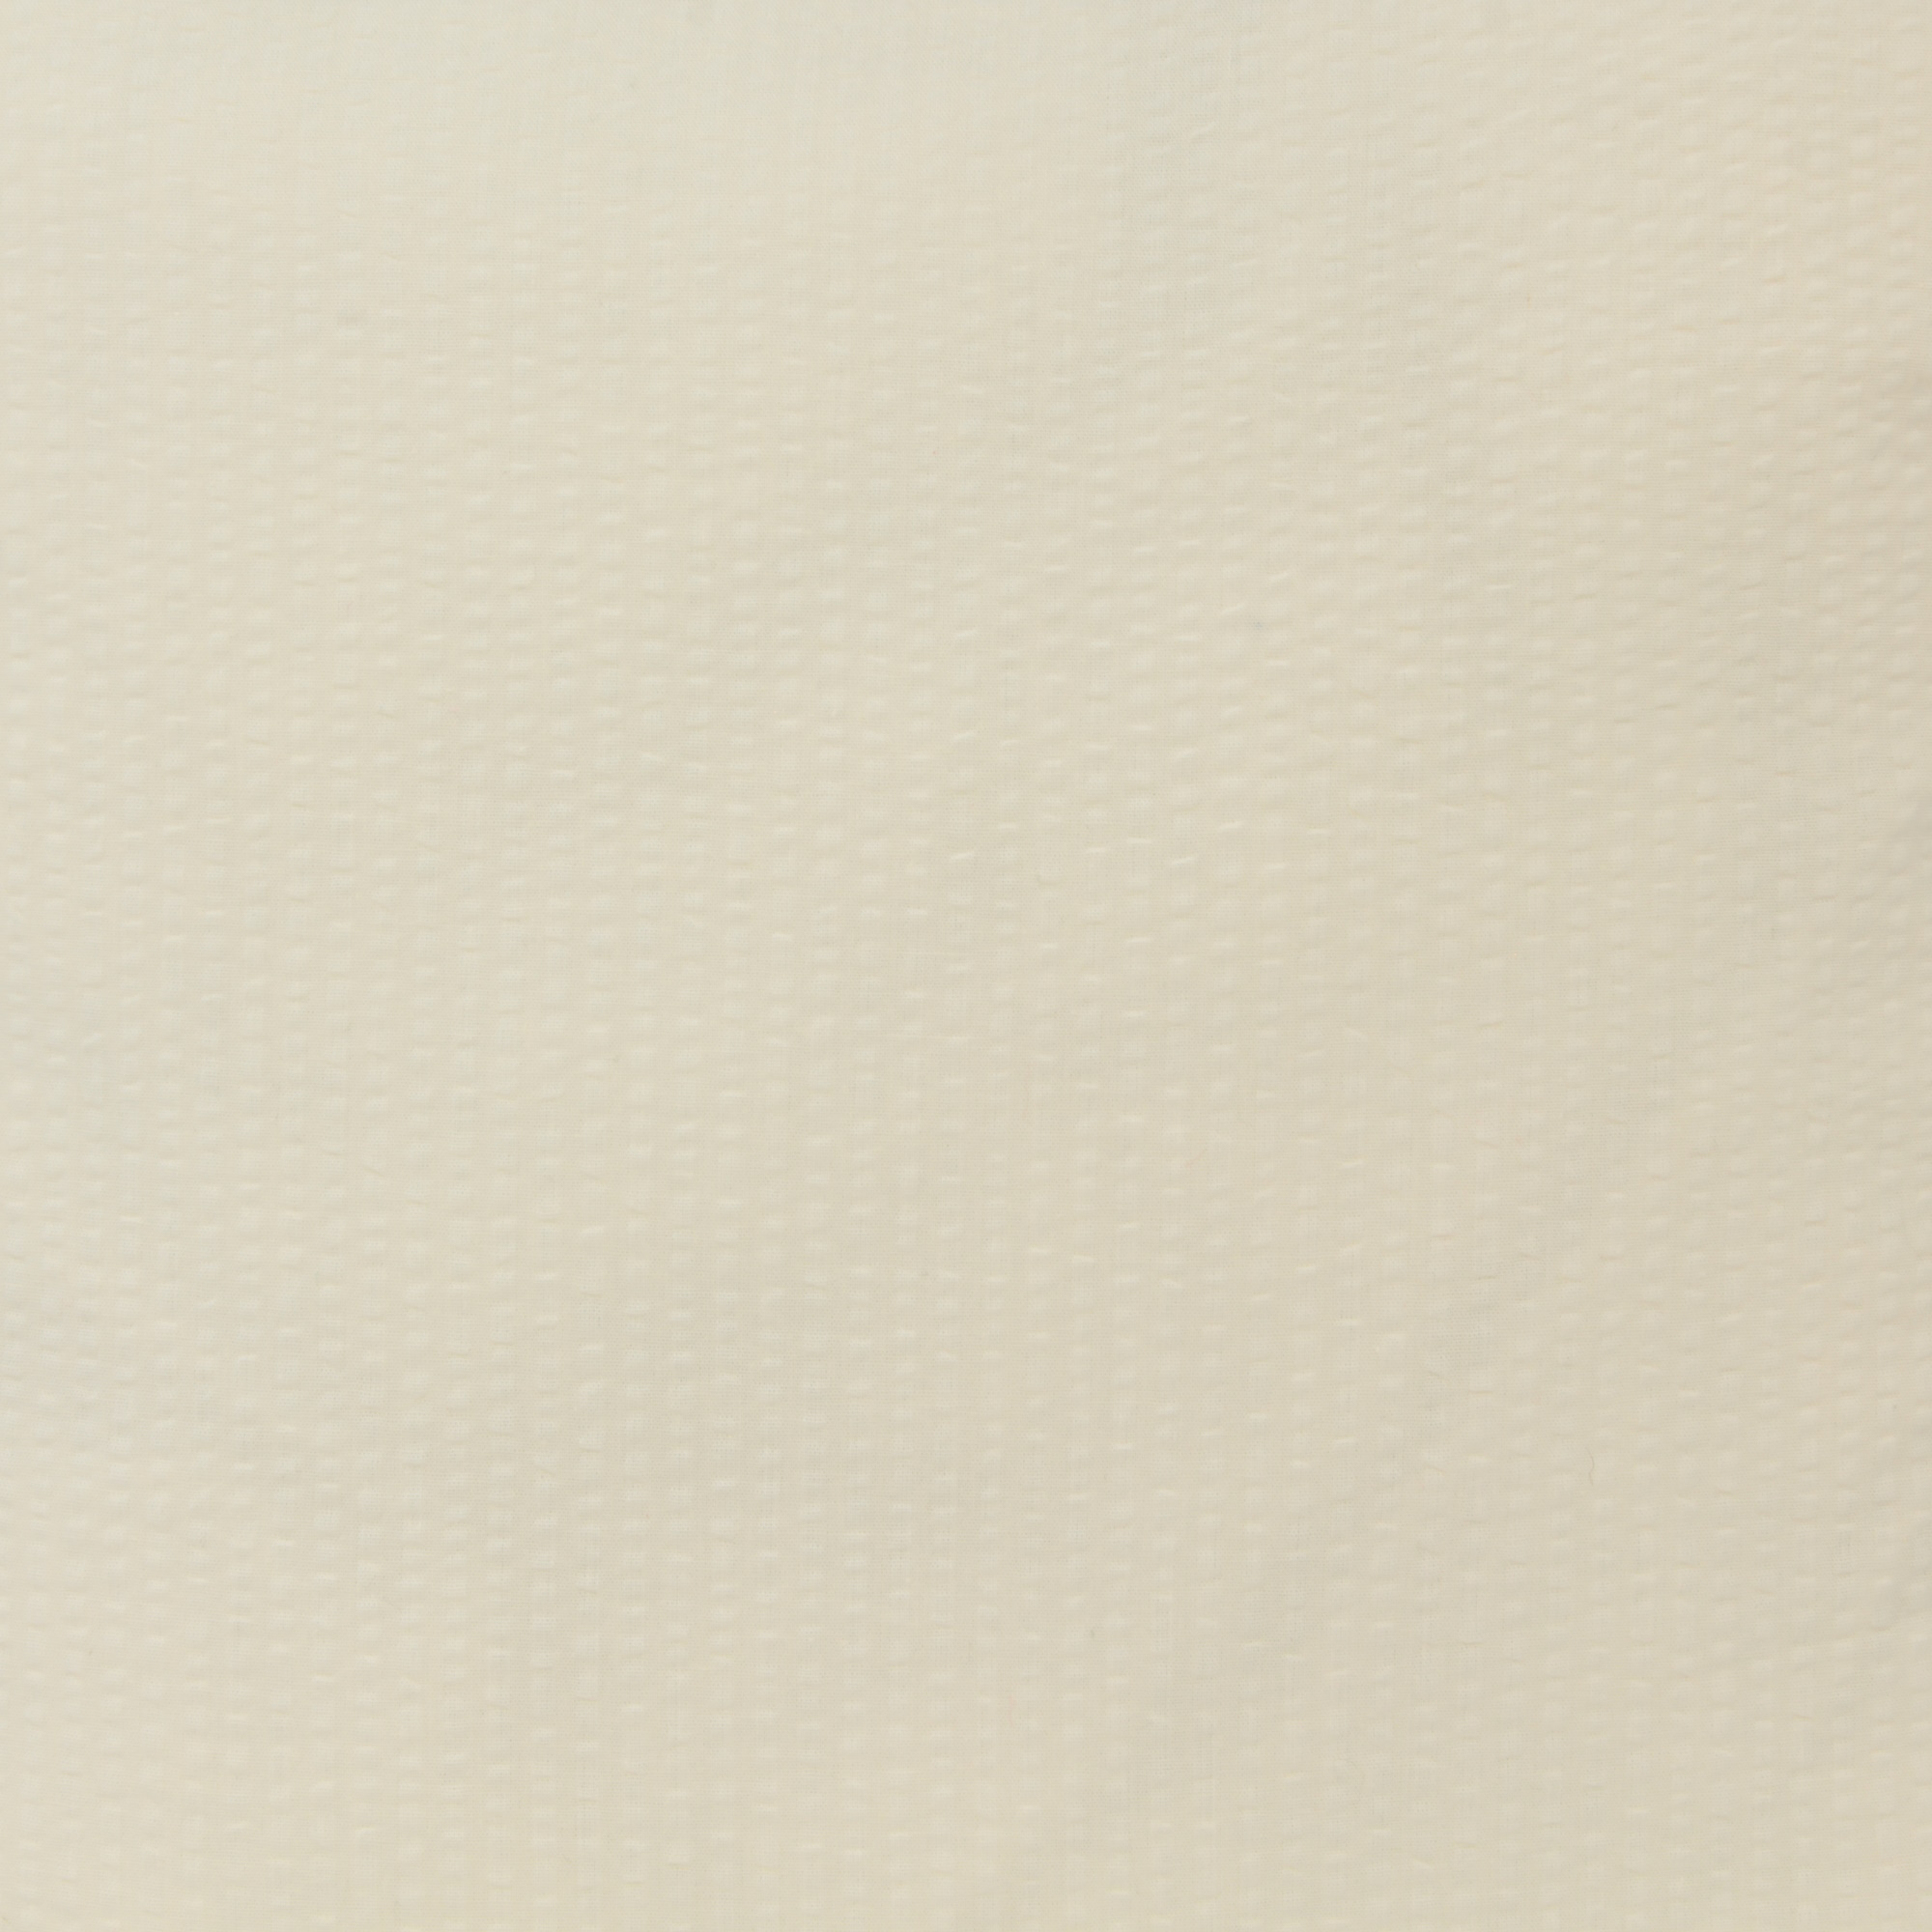 Edel Seersucker Kissenbezug 30x30 cm Creme Baumwolle